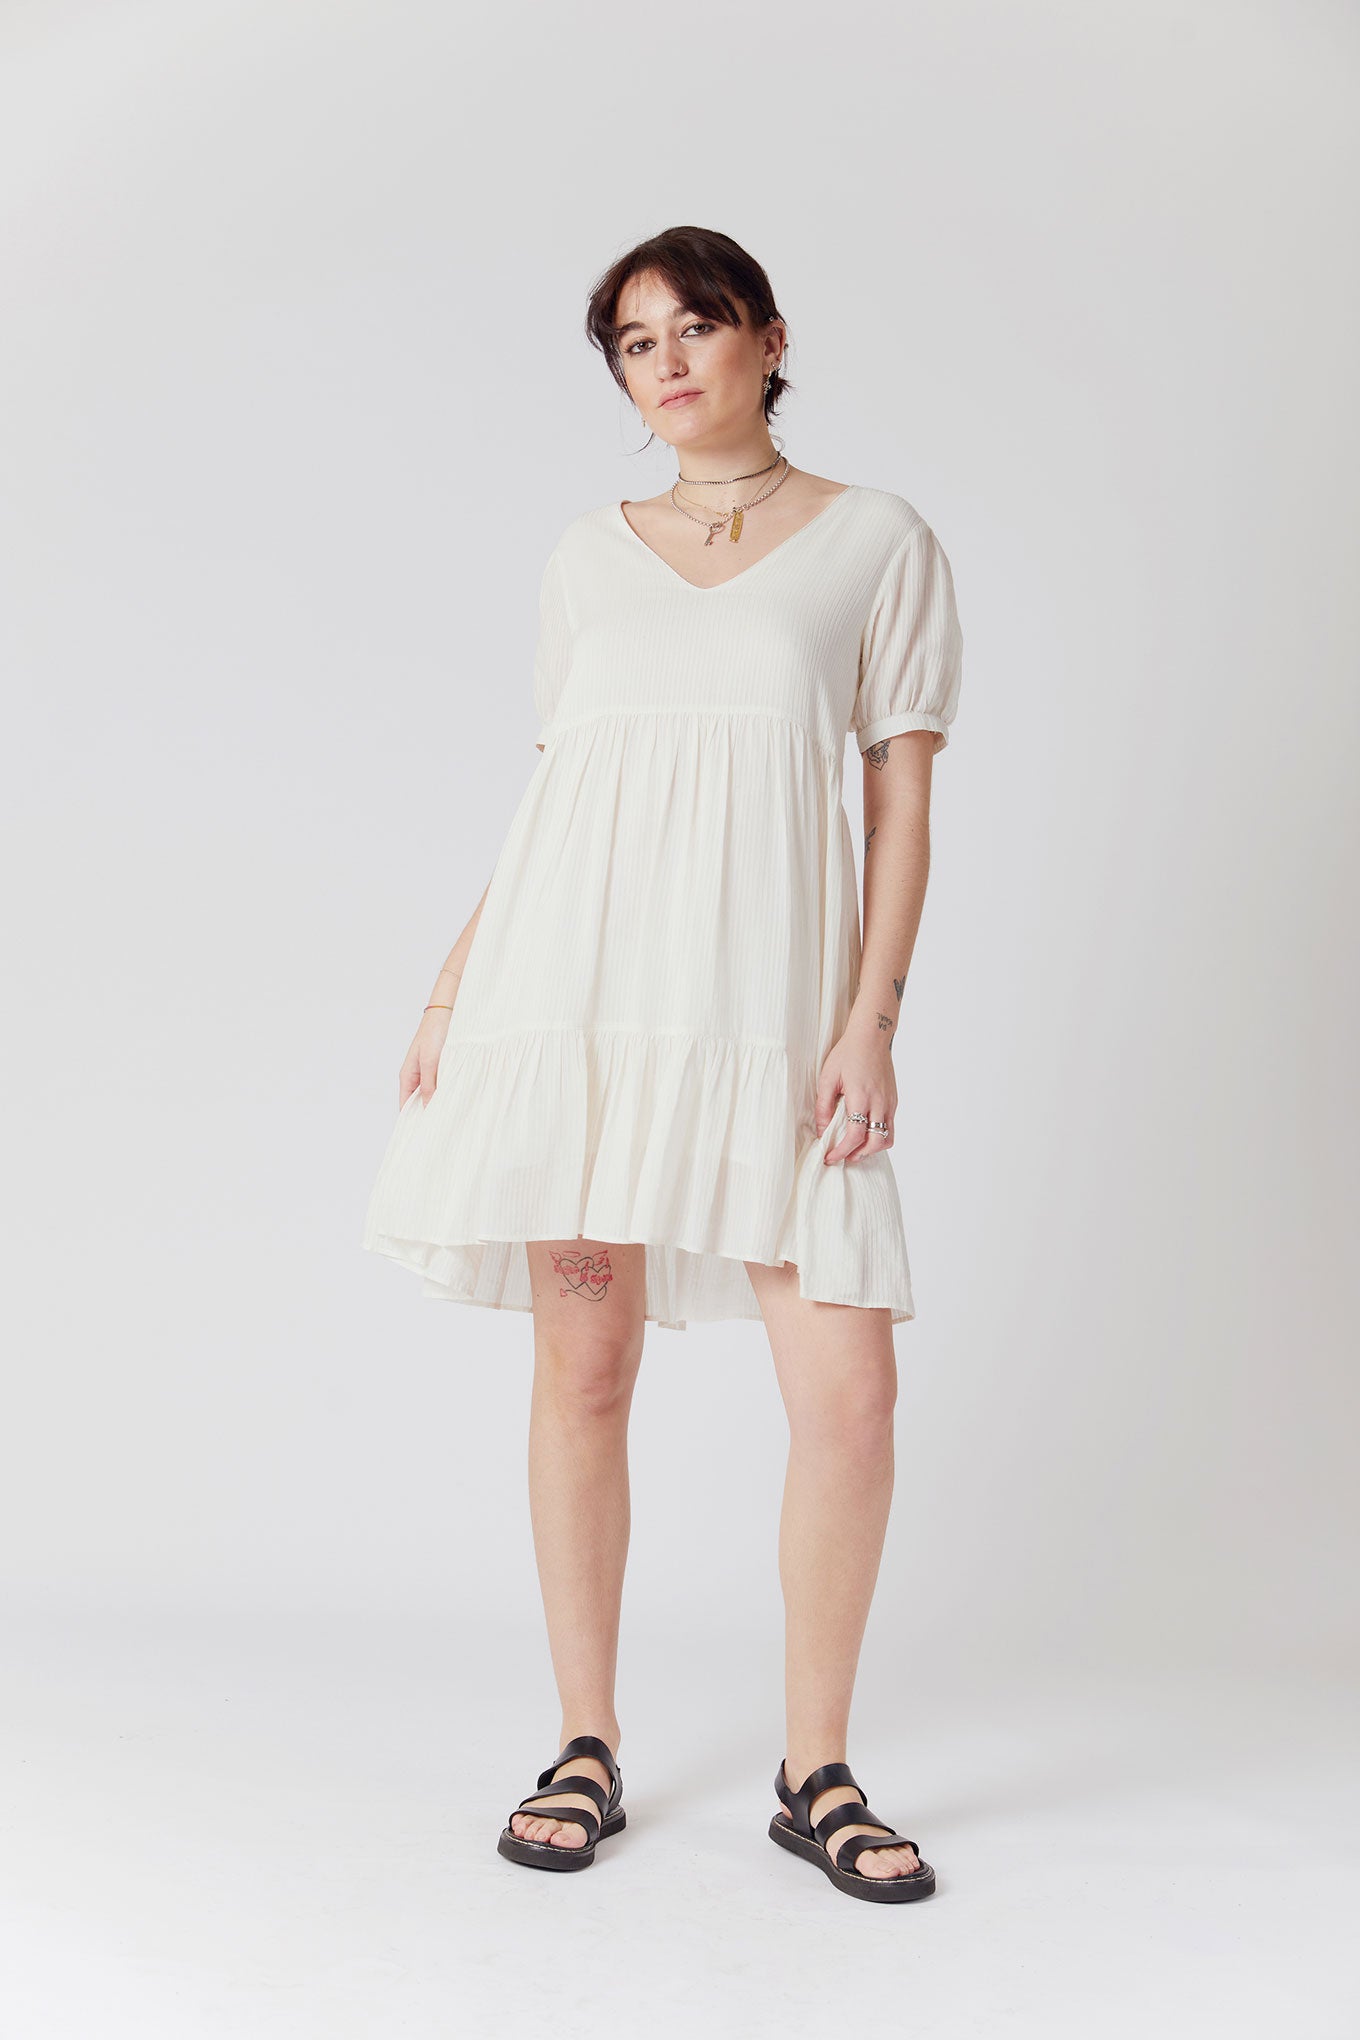 SKY Corn Fabric Mini Dress - Off White, SIZE 1 / UK 8 / EUR 36